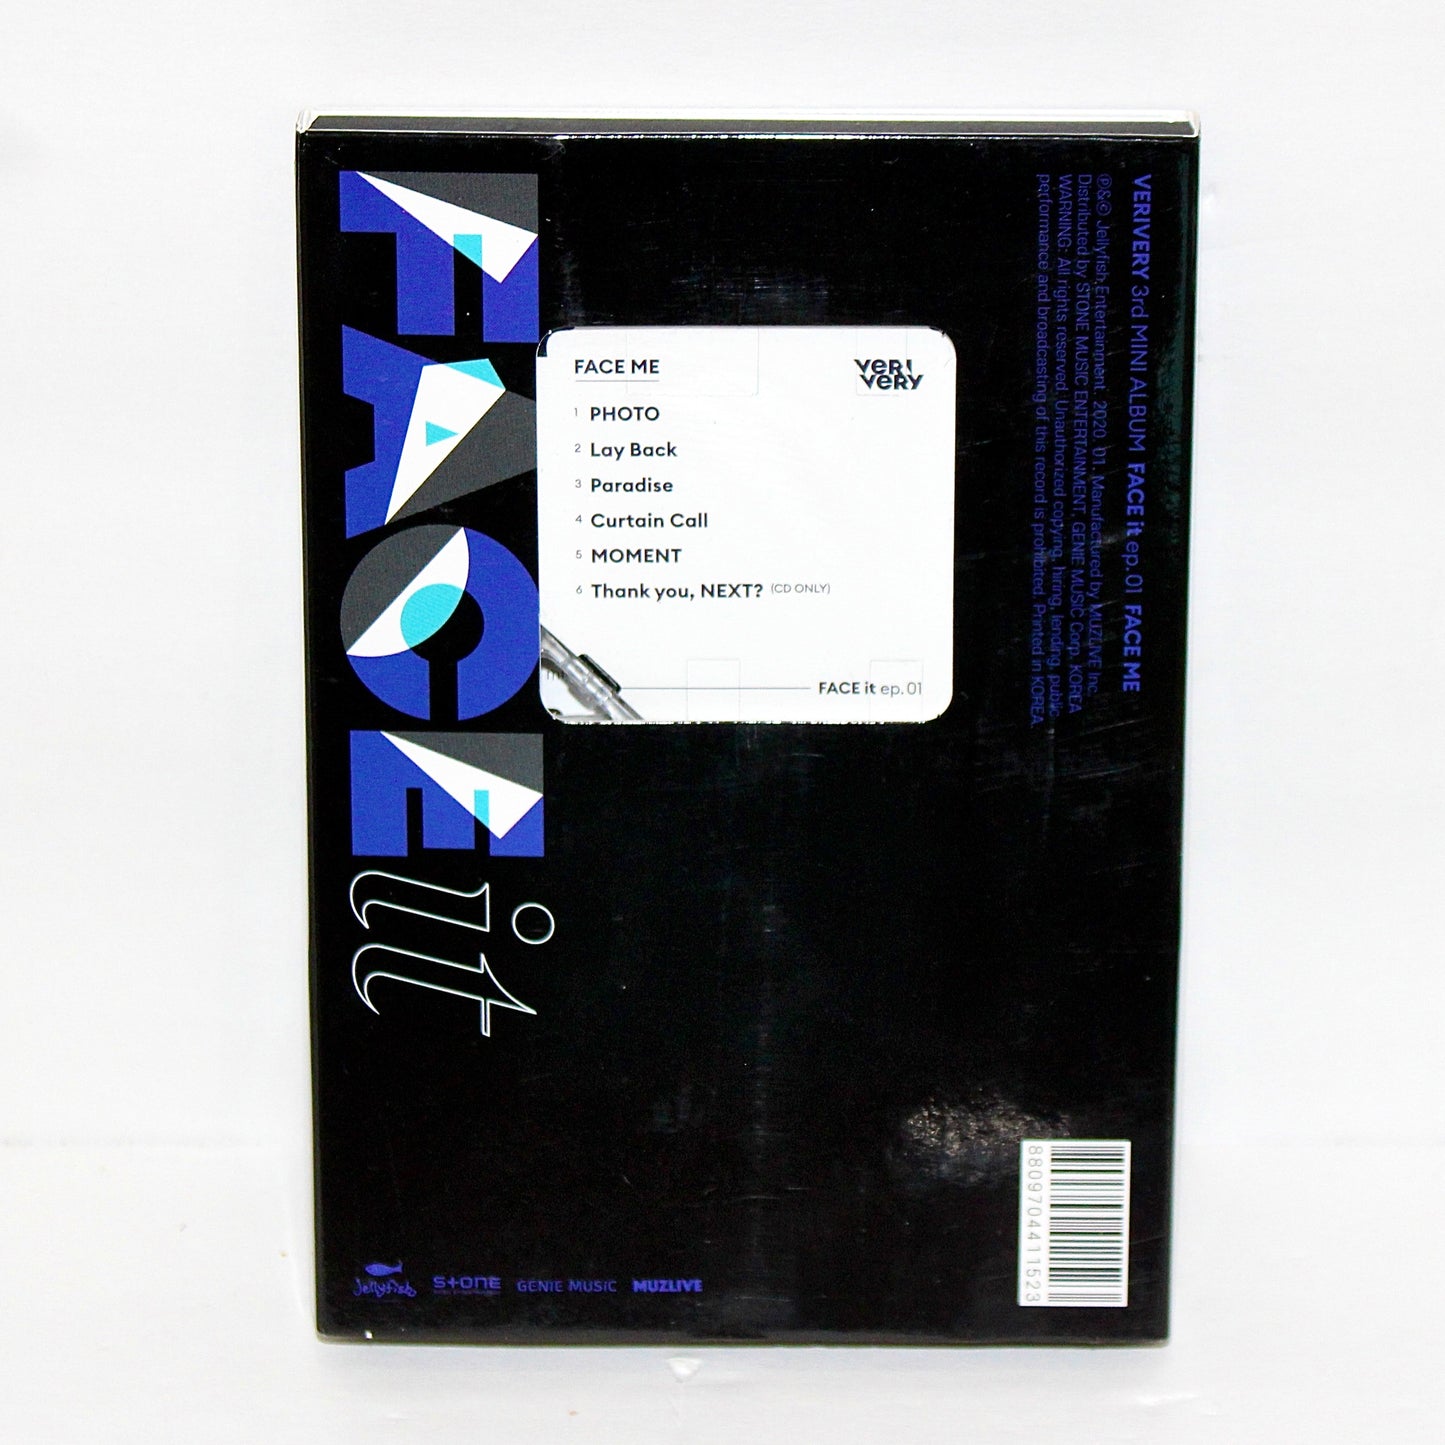 VERIVERY 3rd Mini Album: FACE it ep. 01 [FACE ME] | Kihno Kit